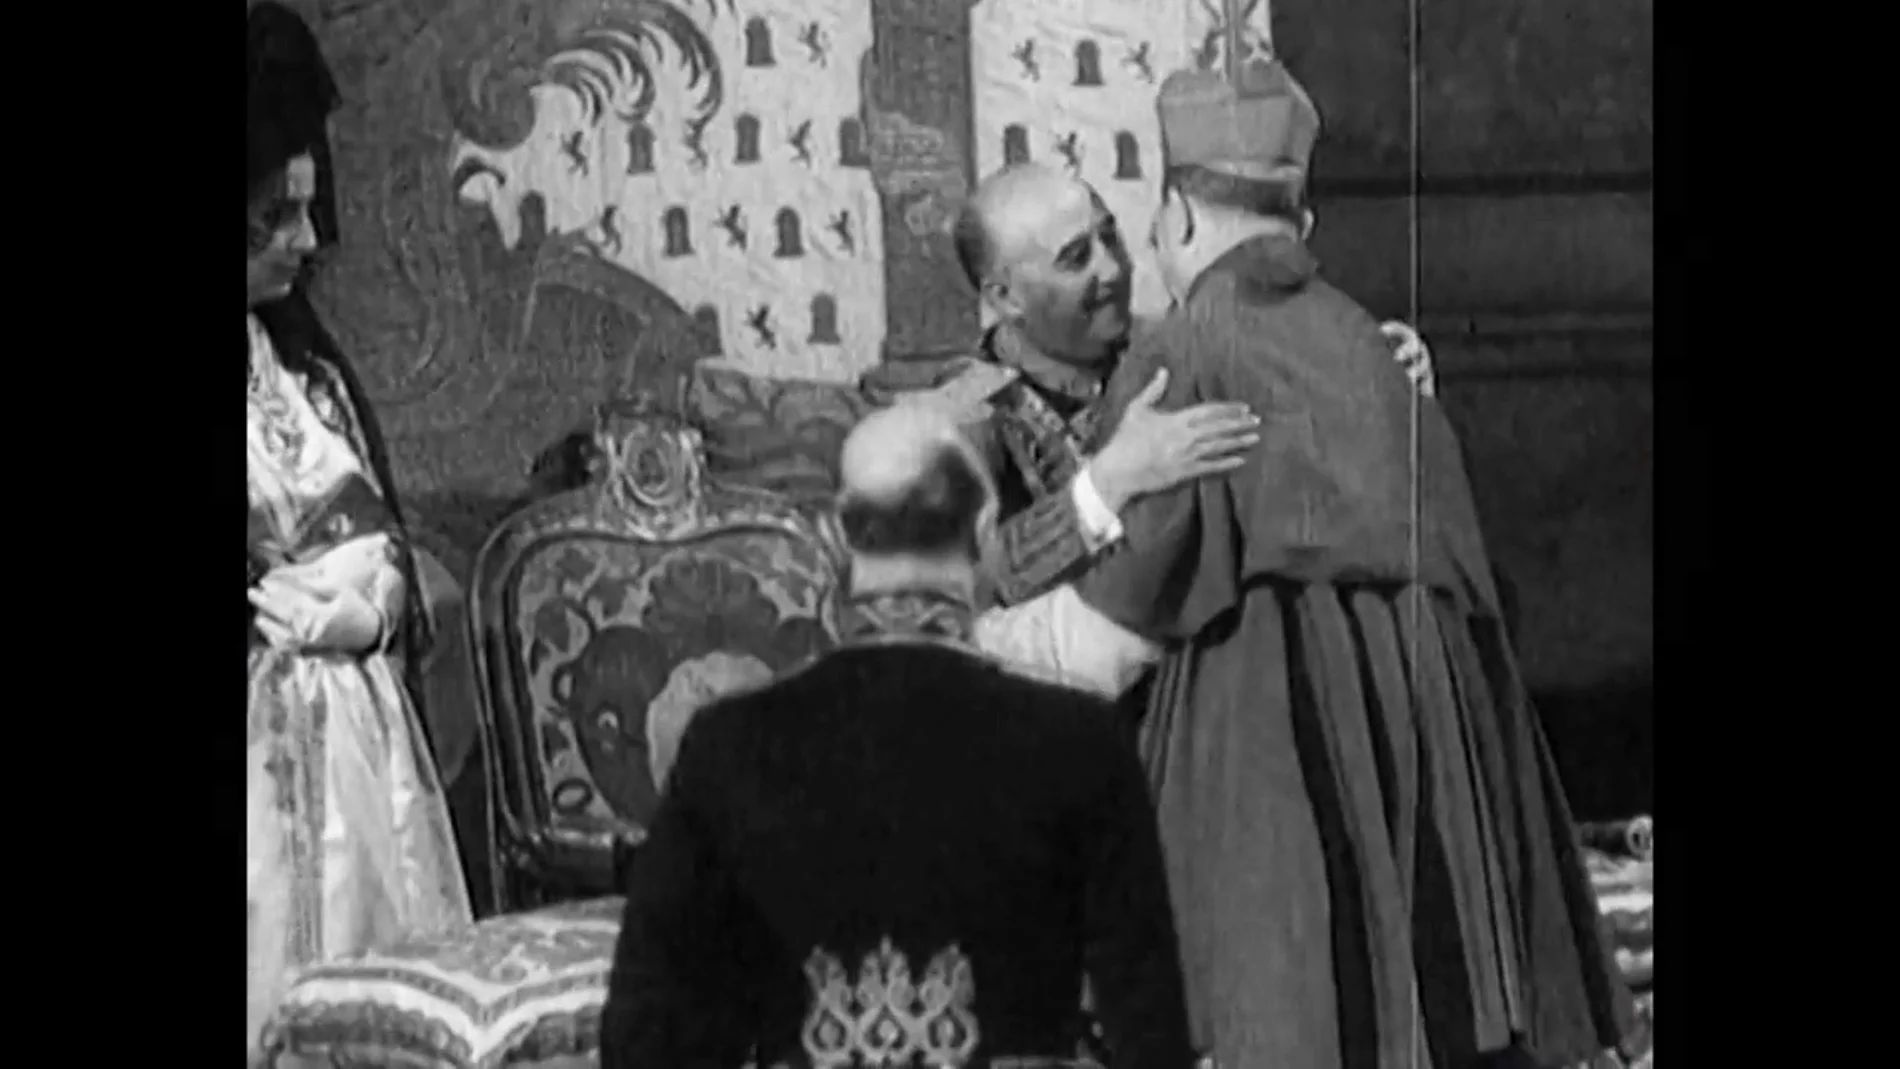 La relación de España y la religión: "Por nuestro pasado franquista, y después también, monarquía e Iglesia están vinculadas"